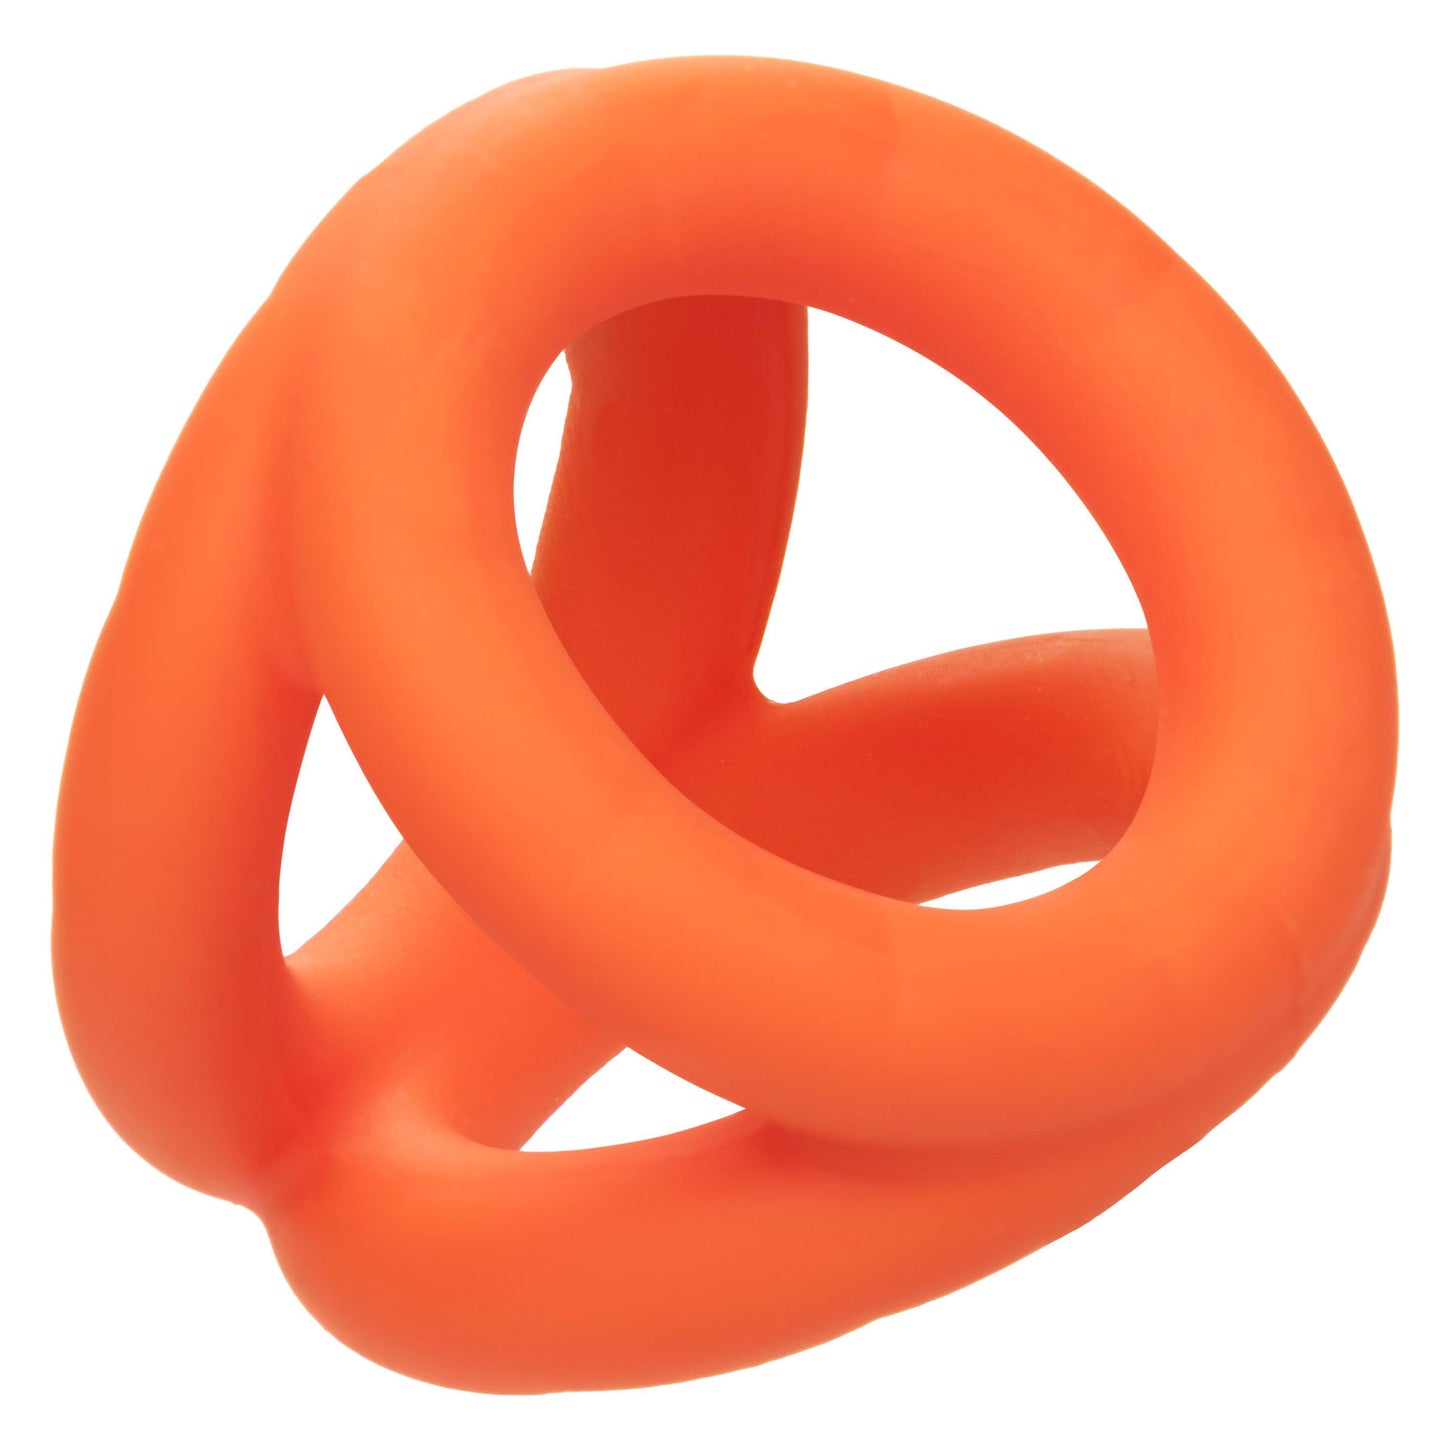 Alpha Liquid Silicone Tri-Ring - Orange  Orange